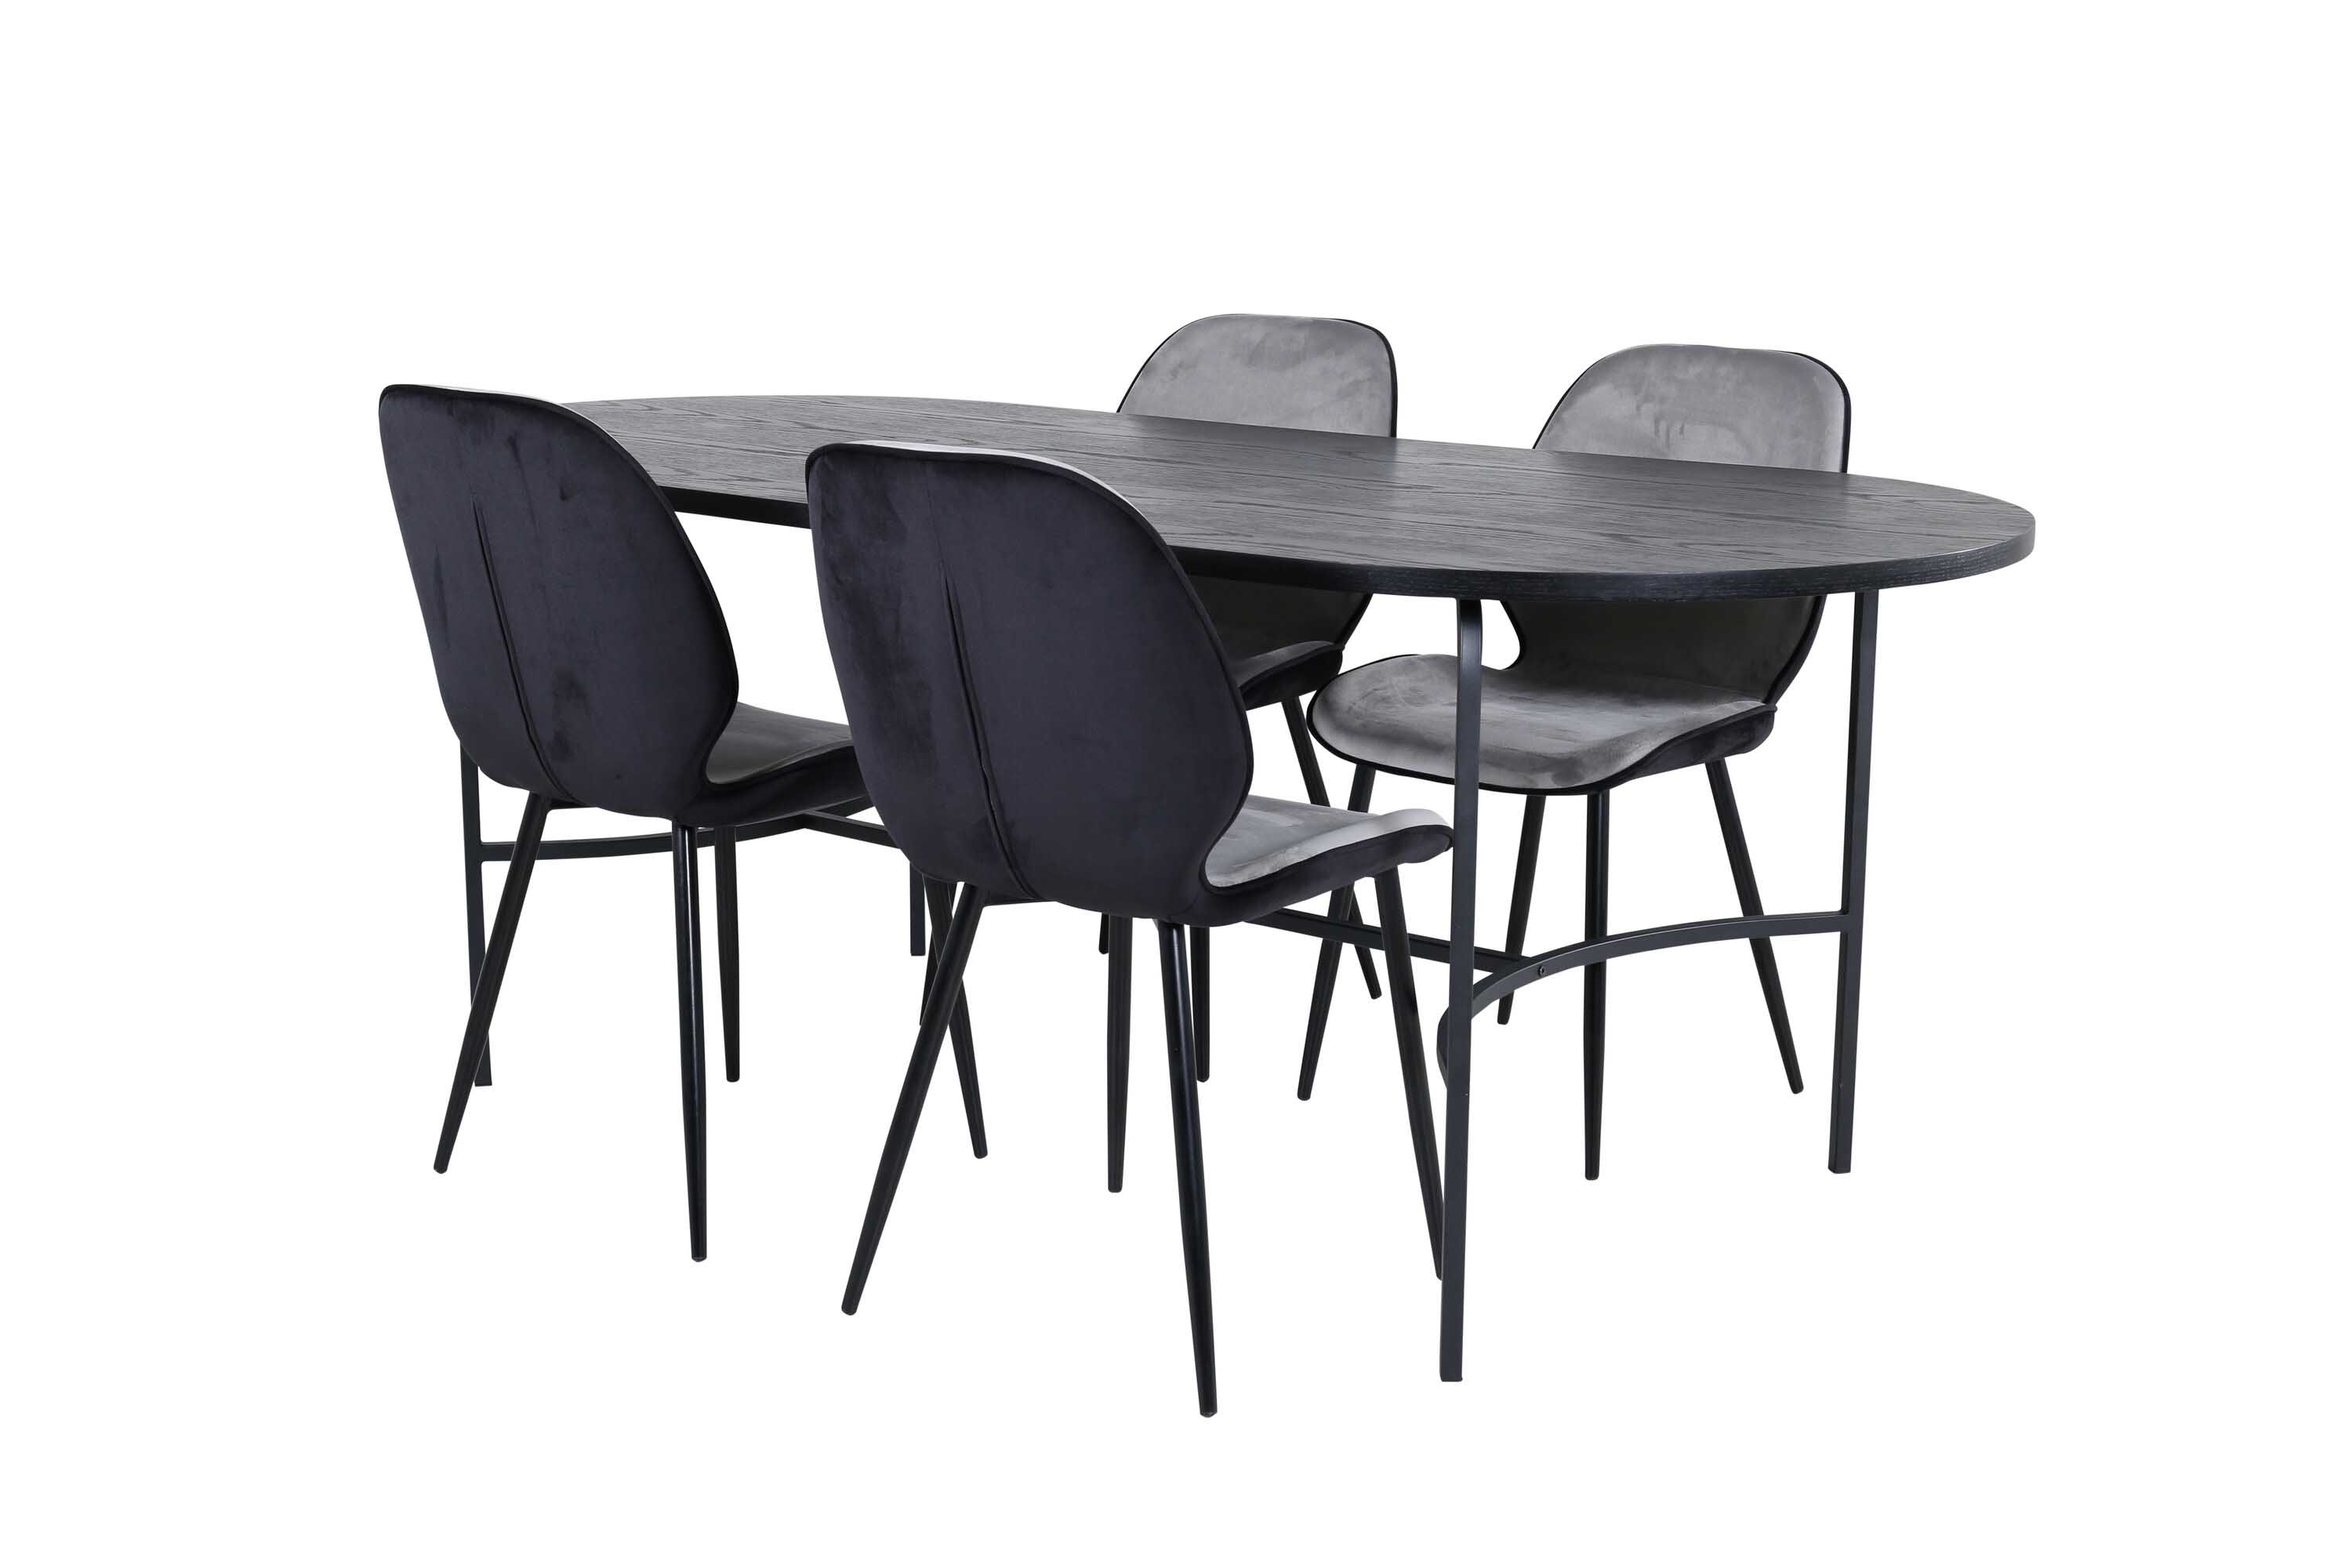 Venture Design Skate & Emma spisegruppe Grå/svart 4 stoler & bord 200 x 90 cm